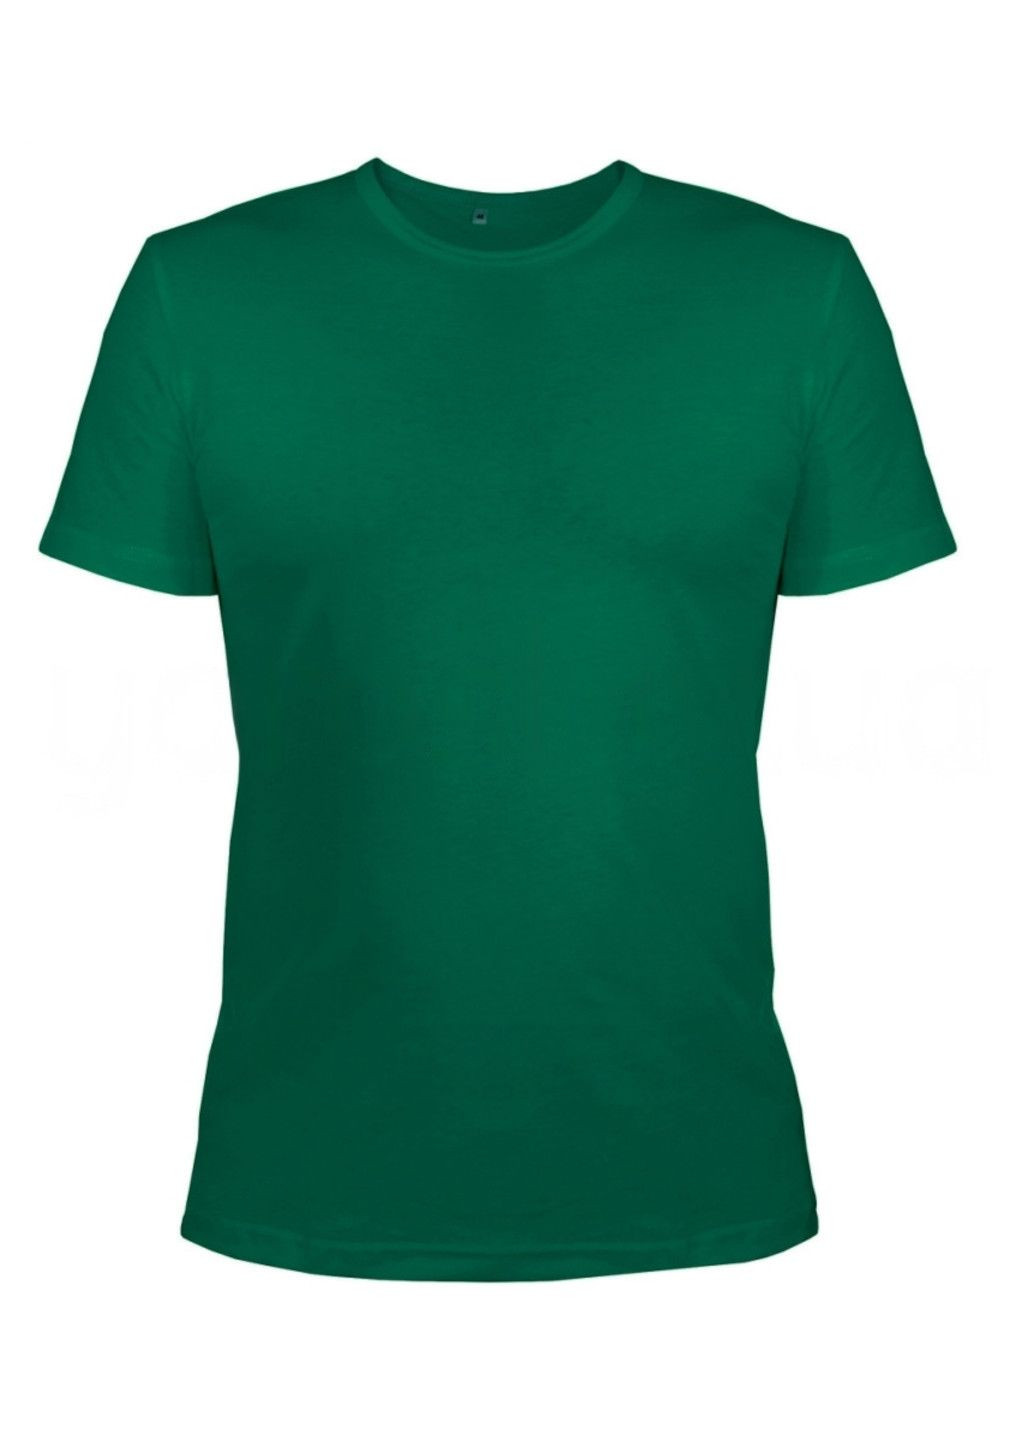 Зелена всесезон футболка жіноча м.45 з коротким рукавом Ярослав